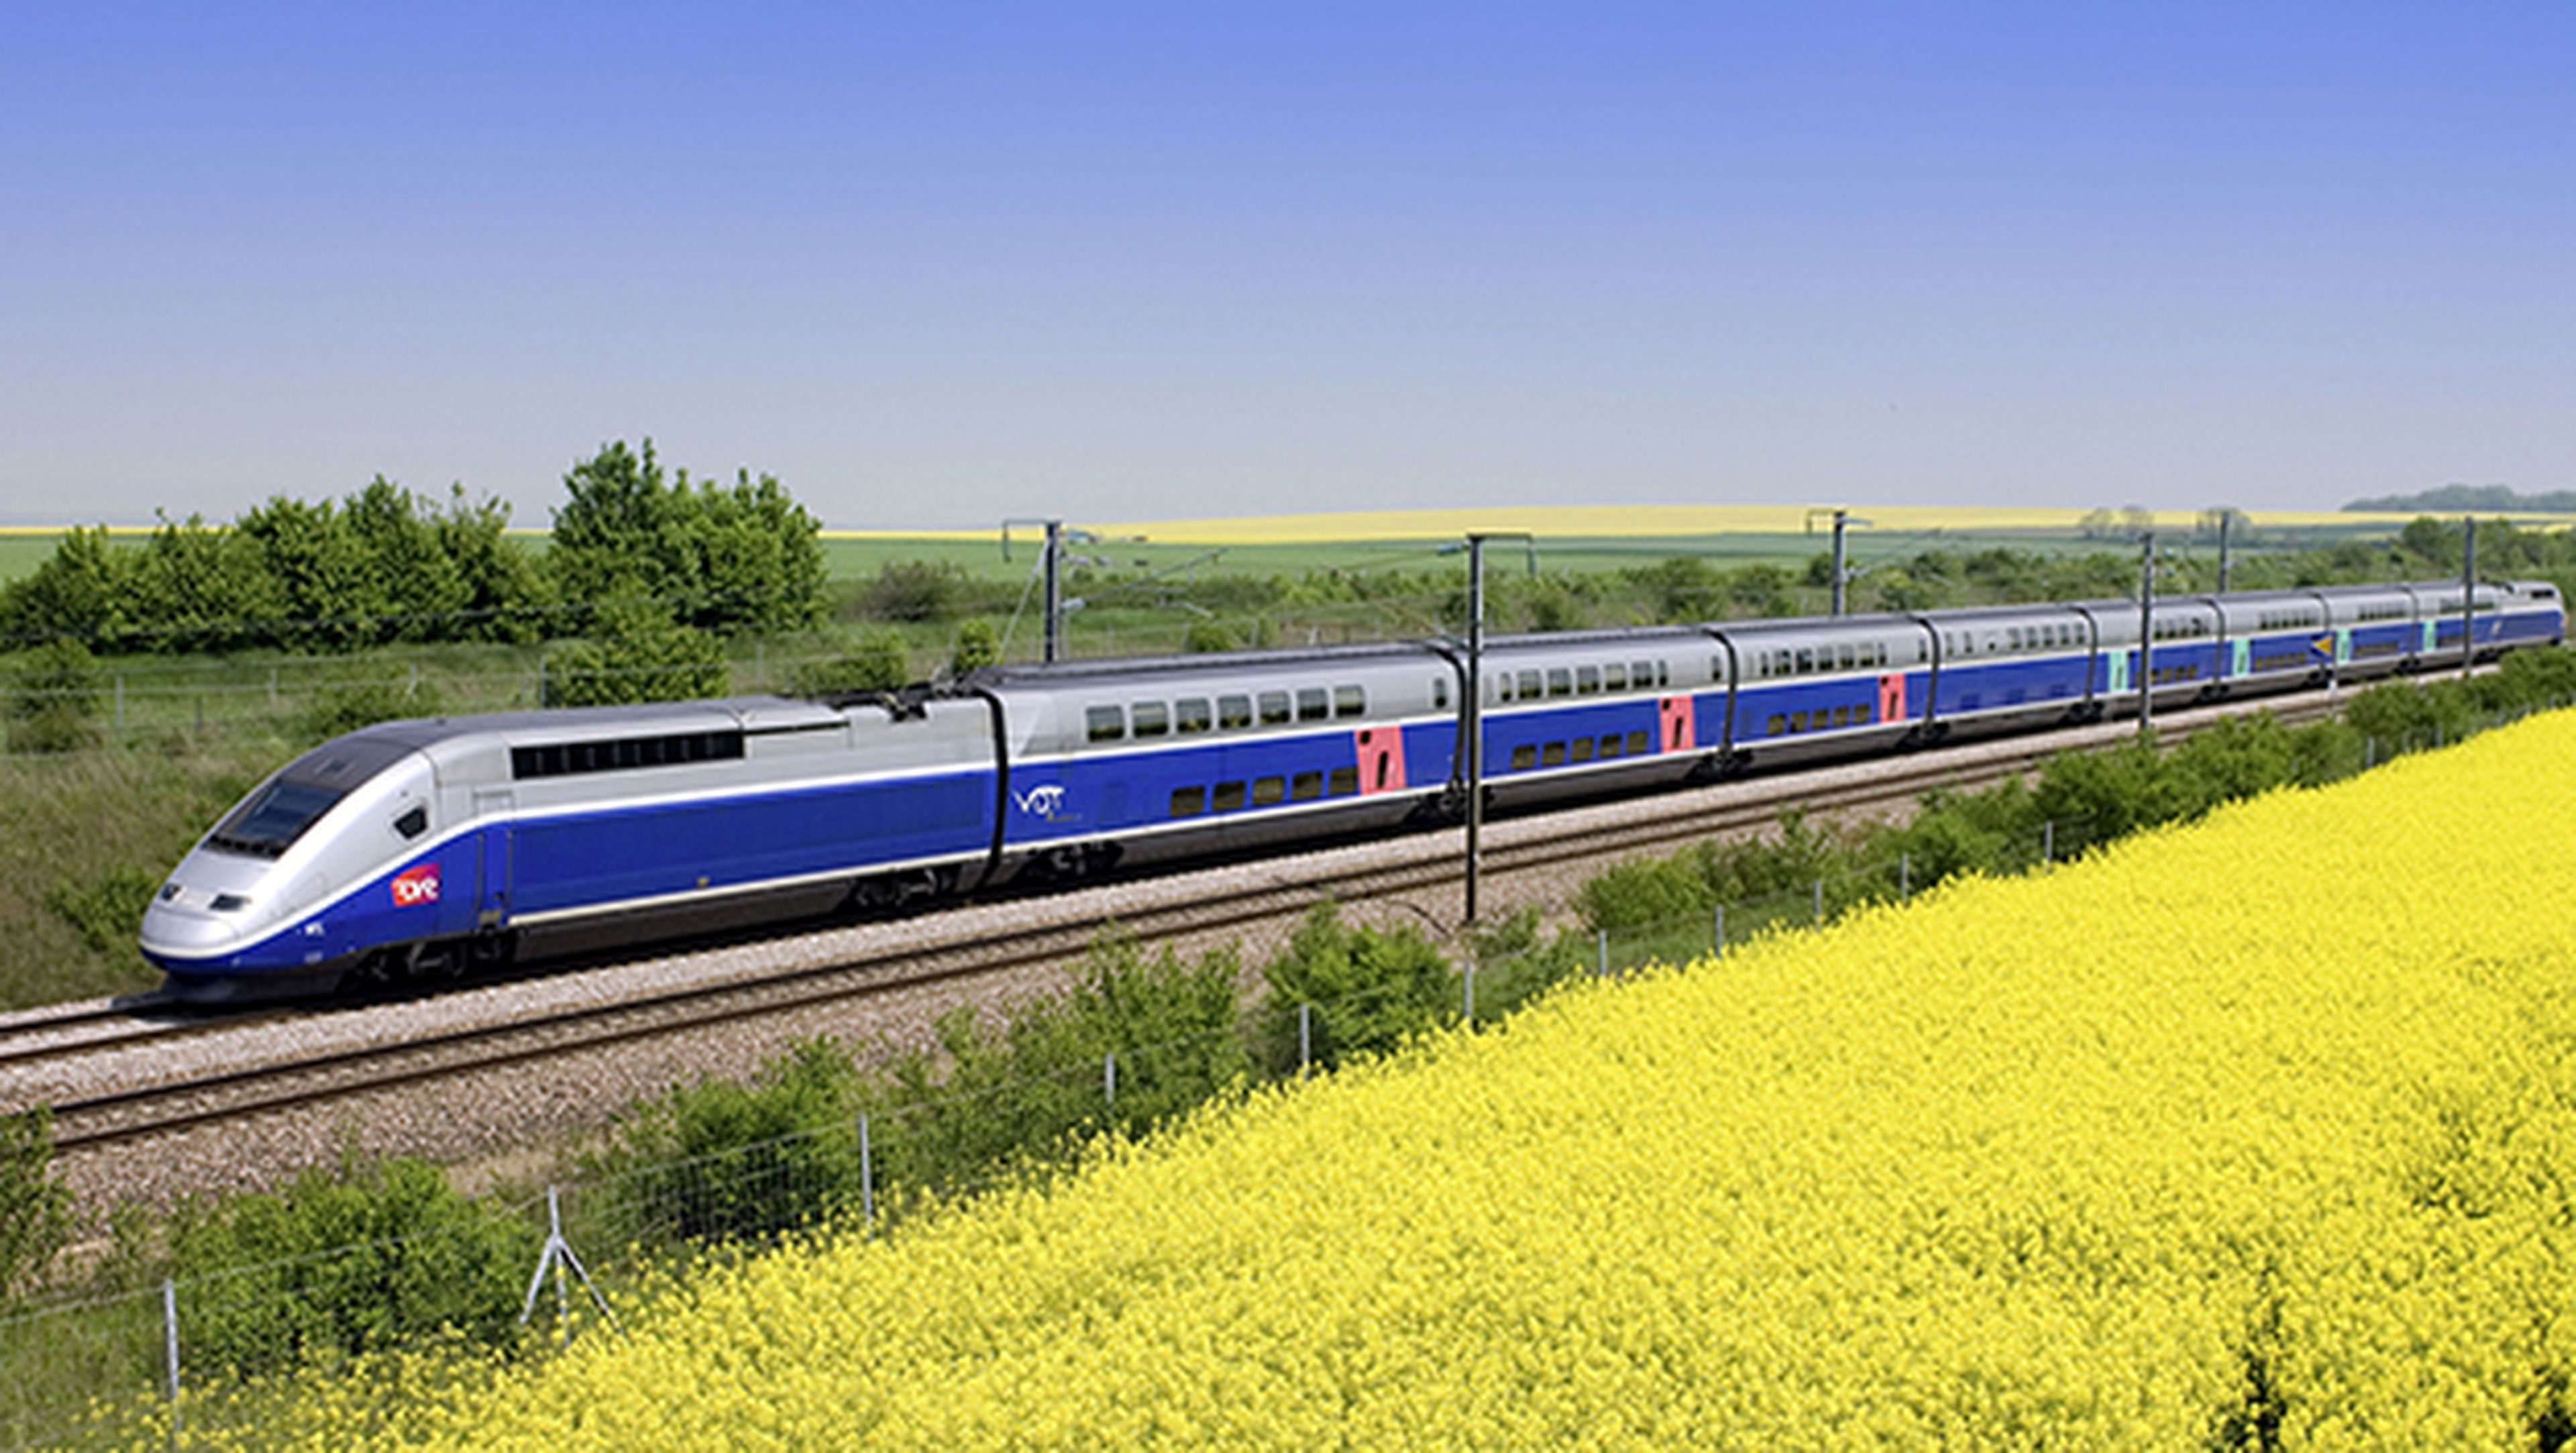 Francia experimentará con trenes sin conductor a partir de 2019